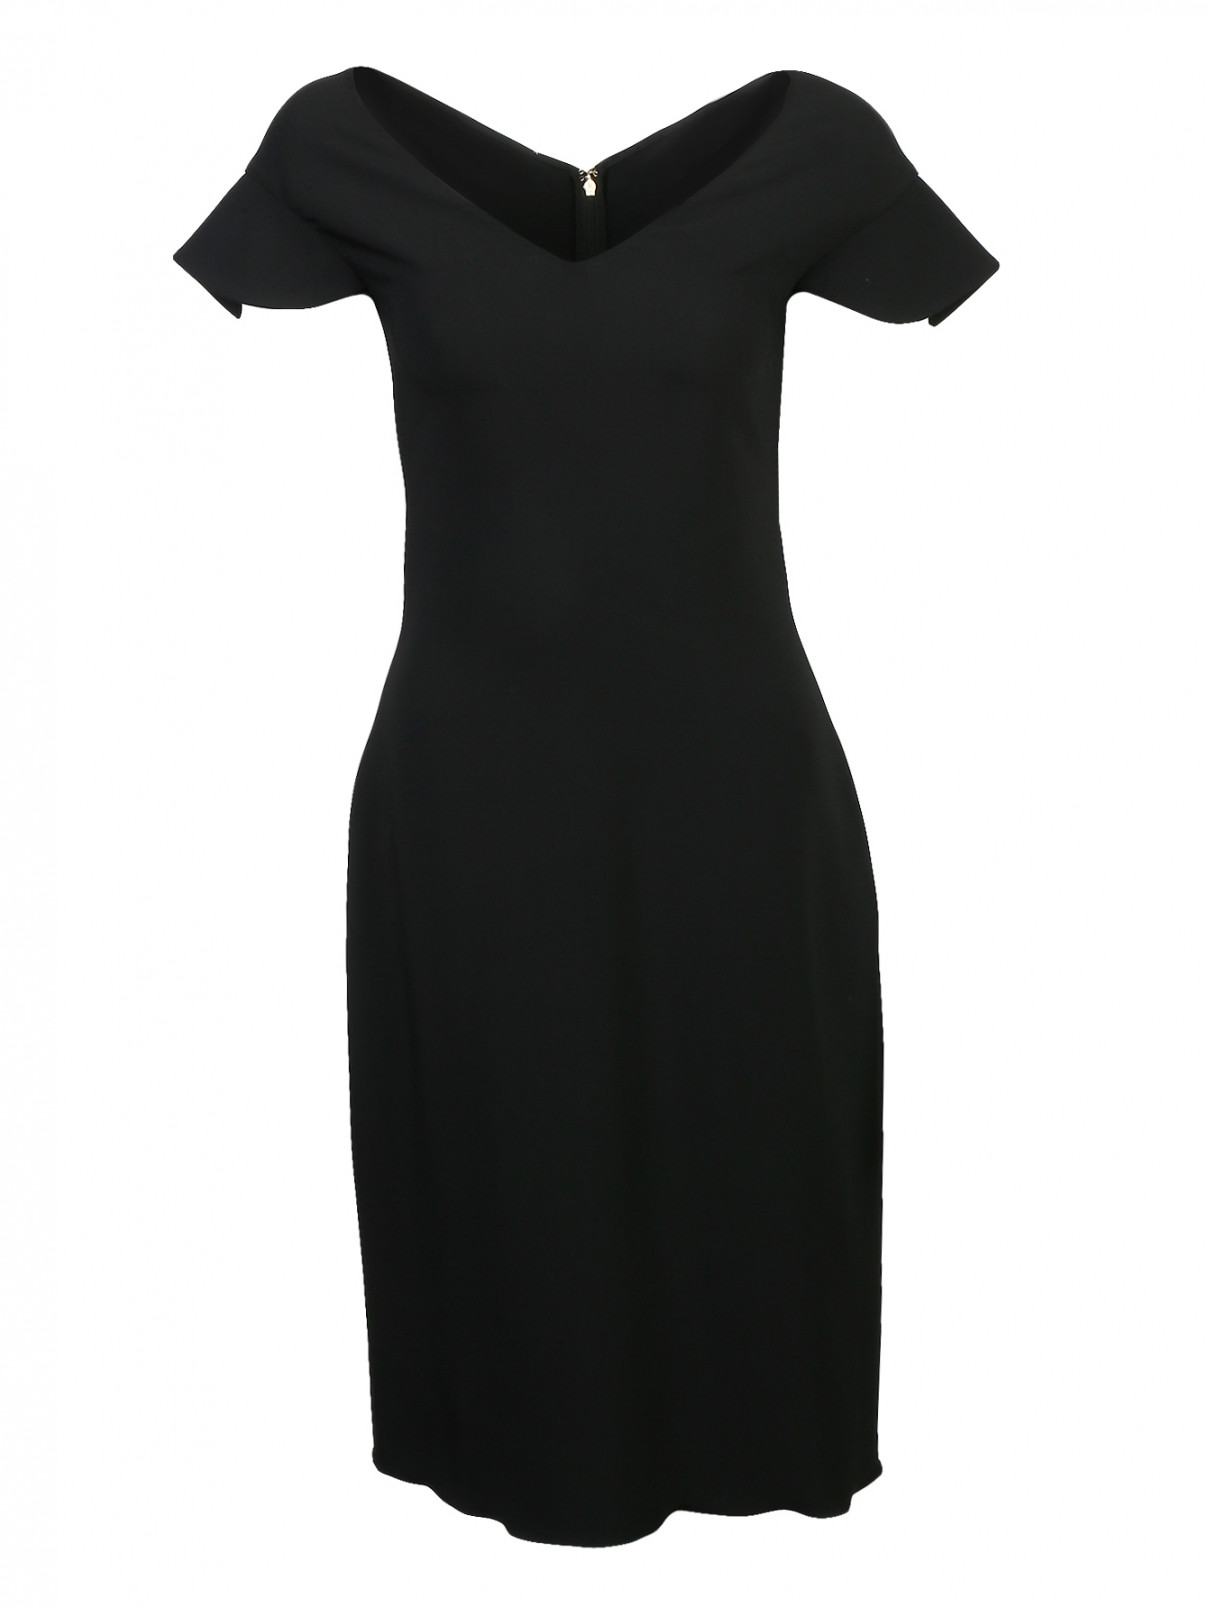 Платье-футляр с оборками на рукавах Antonio Berardi  –  Общий вид  – Цвет:  Черный